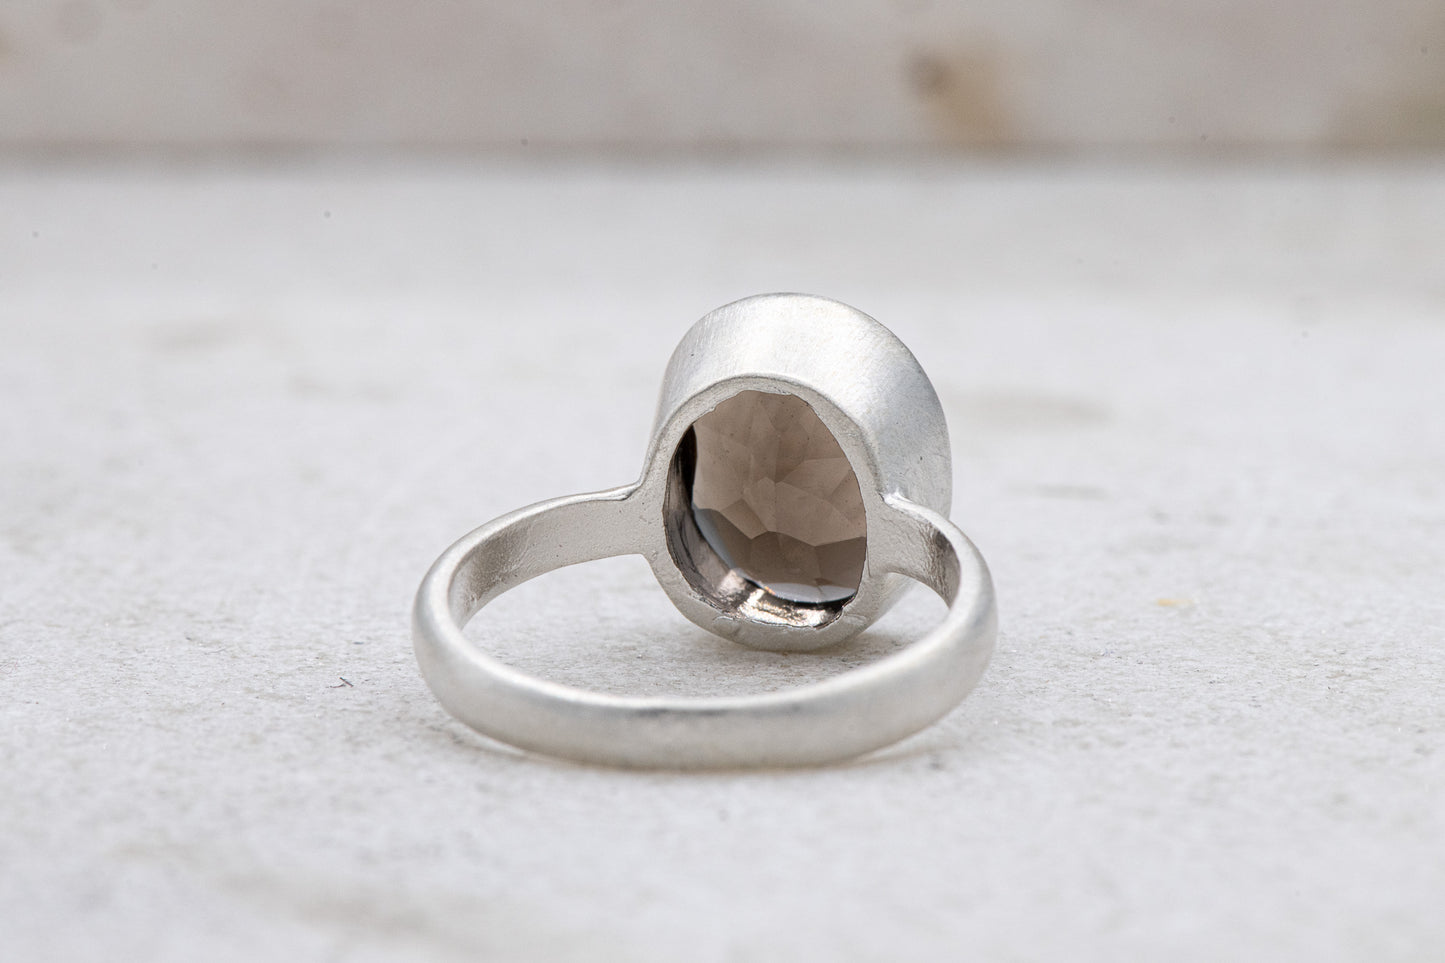 A handmade Solitaire Smoky Quartz Ring with a smoky quartz stone by Cassin Jewelry.